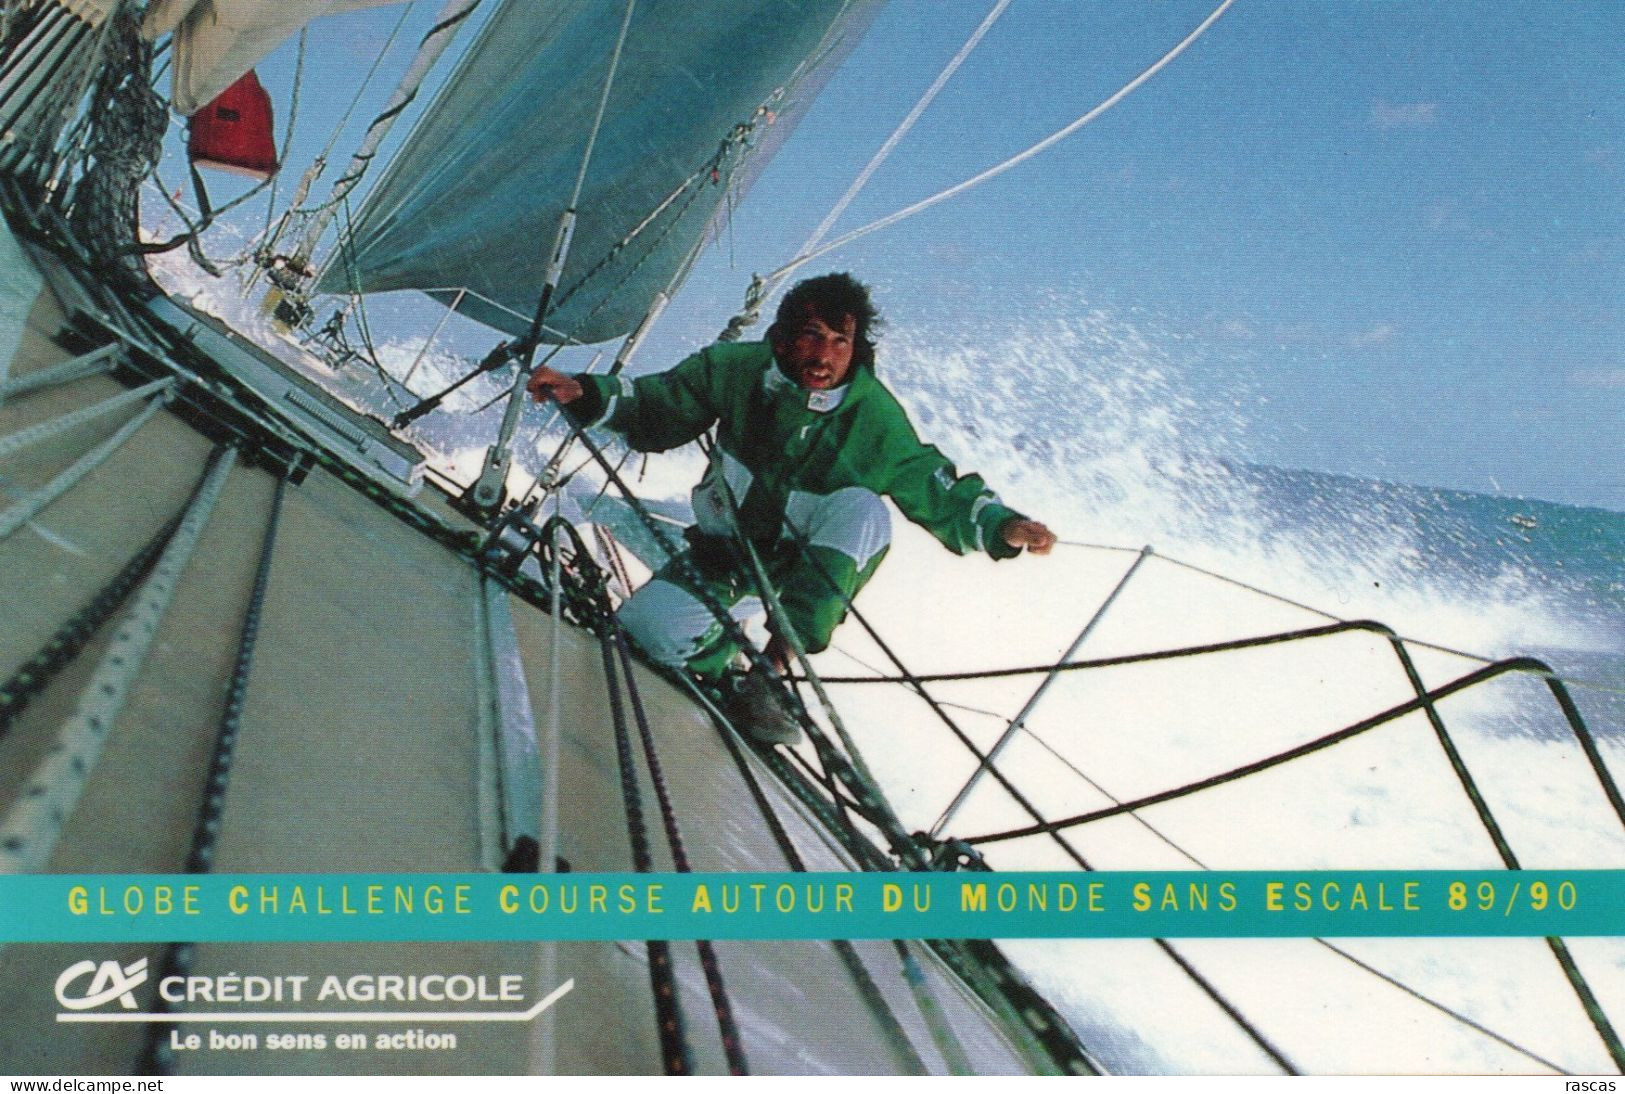 VOILE - PHOTO DEDICACEE AU DOS DU NAVIGATEUR FRANCAIS PHILIPPE JEANTOT SUR CREDIT AGRICOLE IV - GLOBE CHALLENGE 89/90 - Sailing